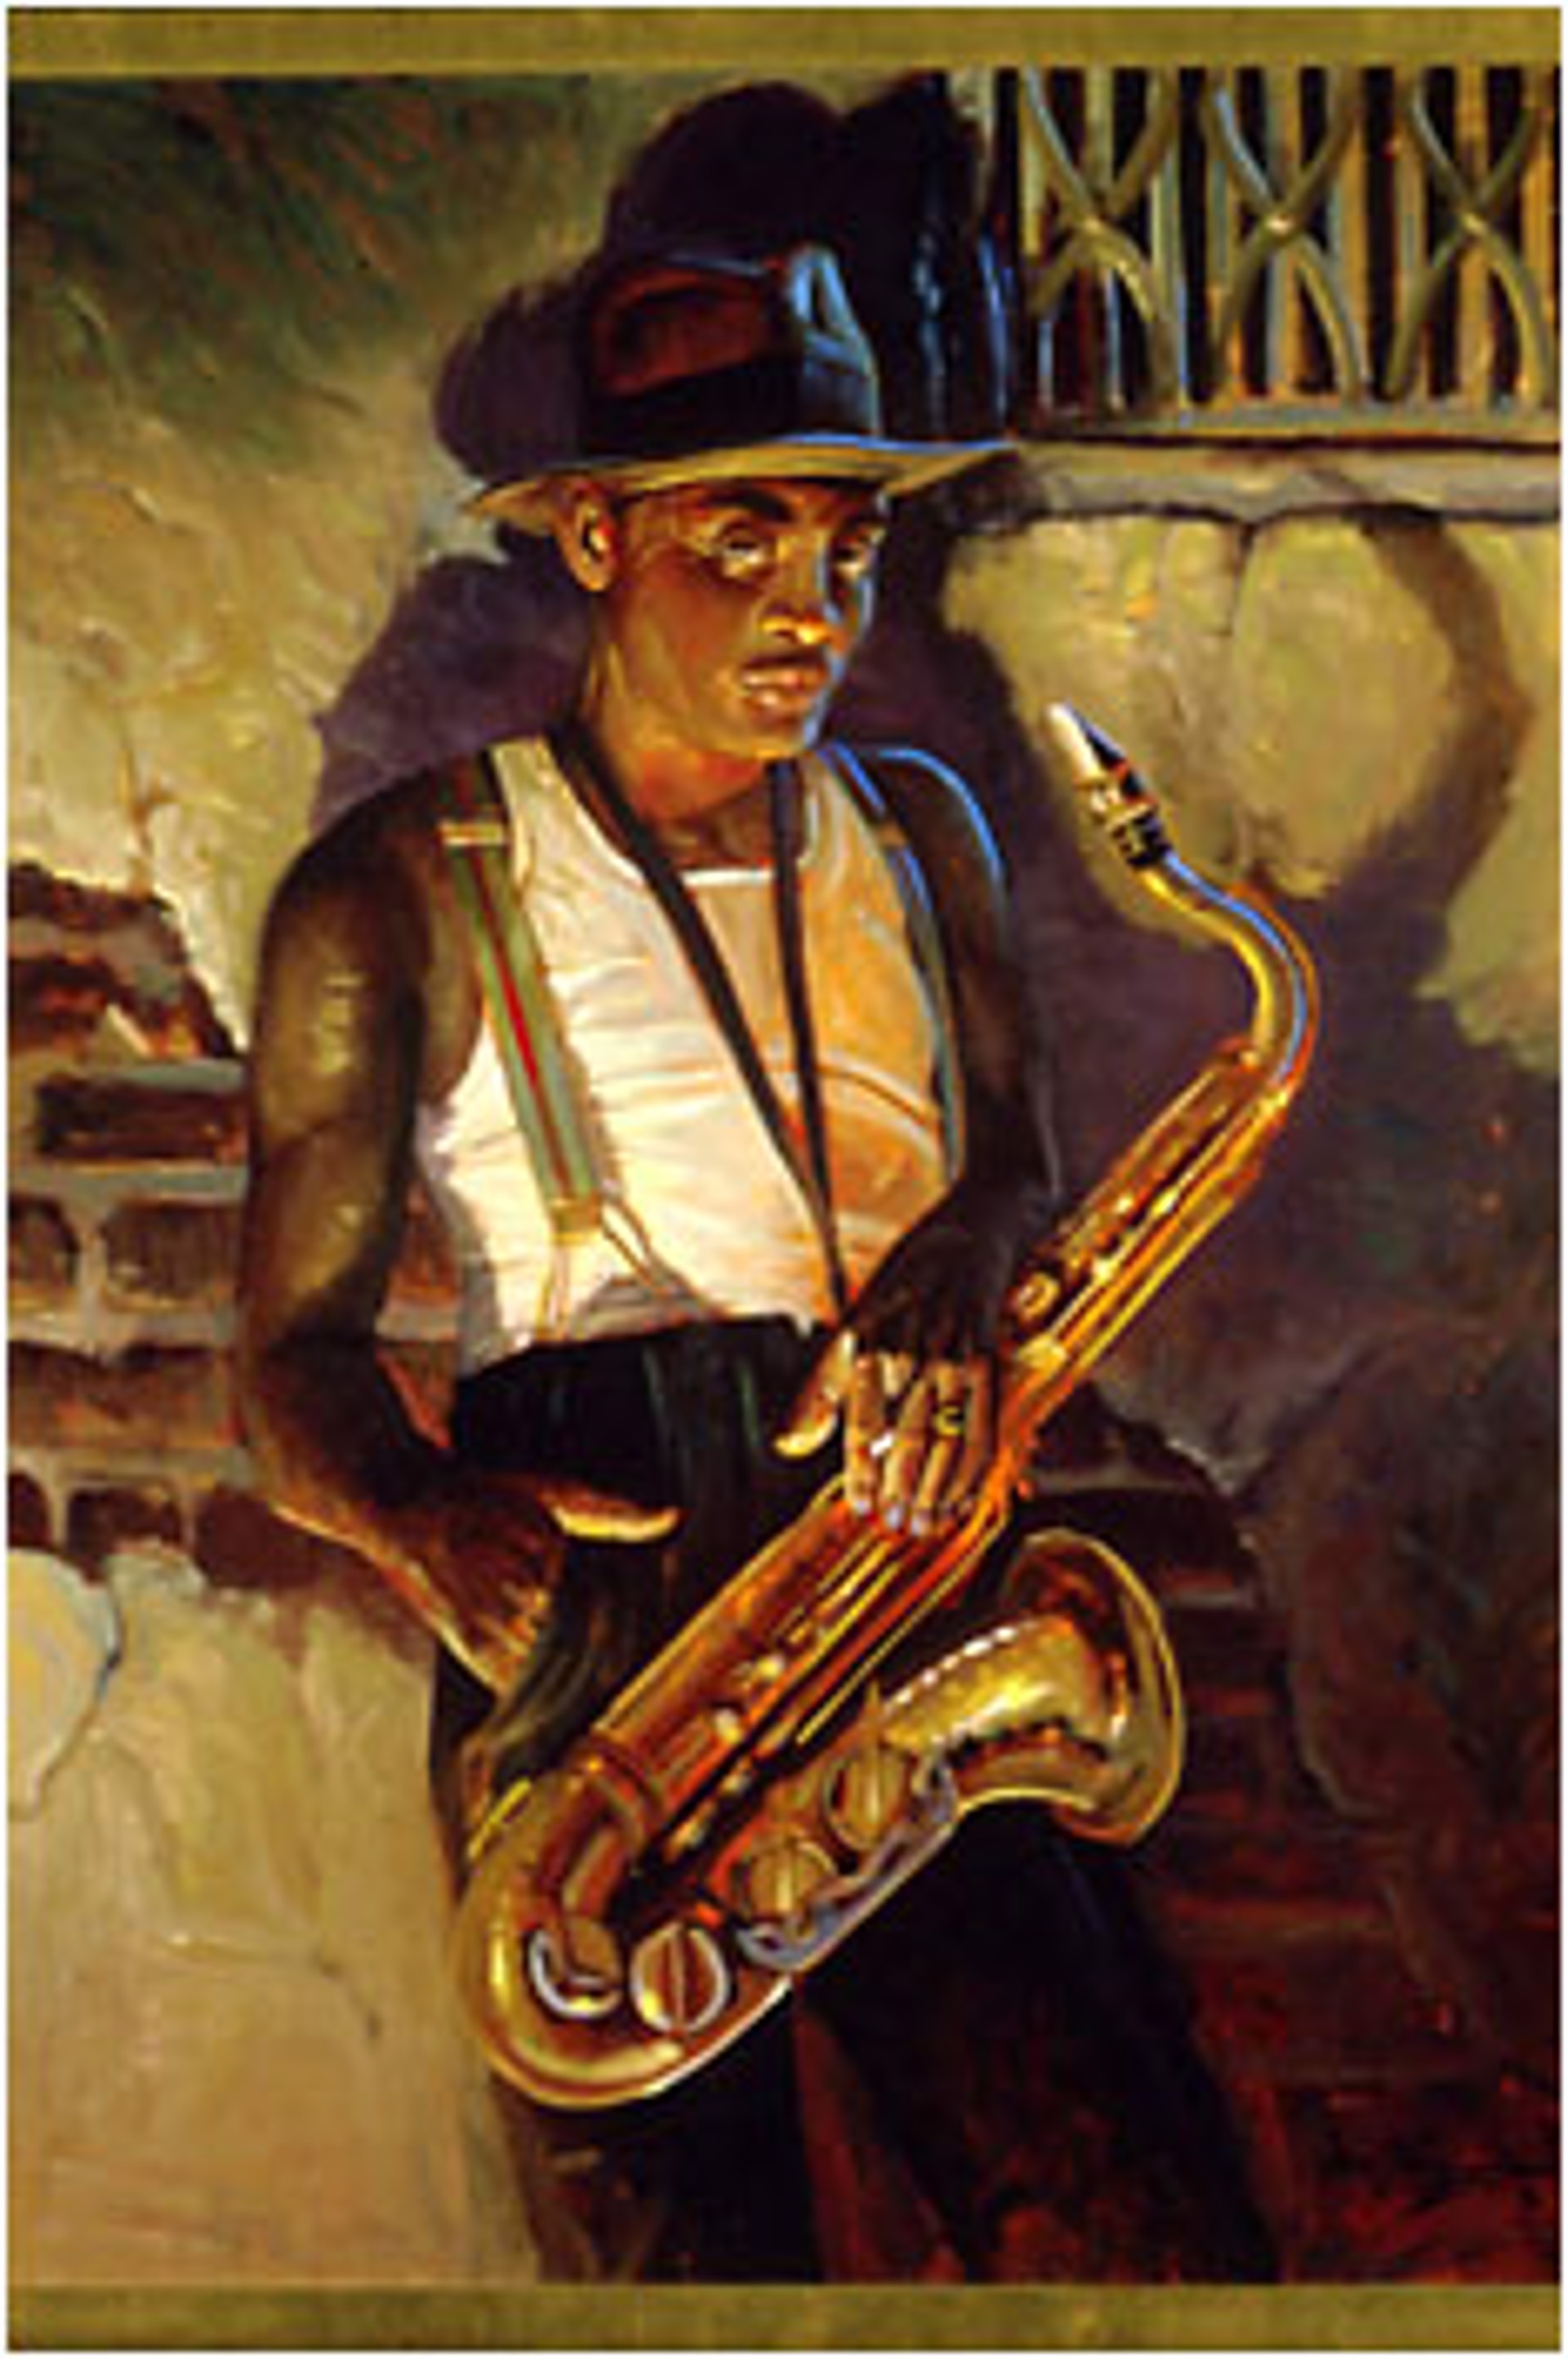 Sax Man (40x30) by John Carroll Doyle